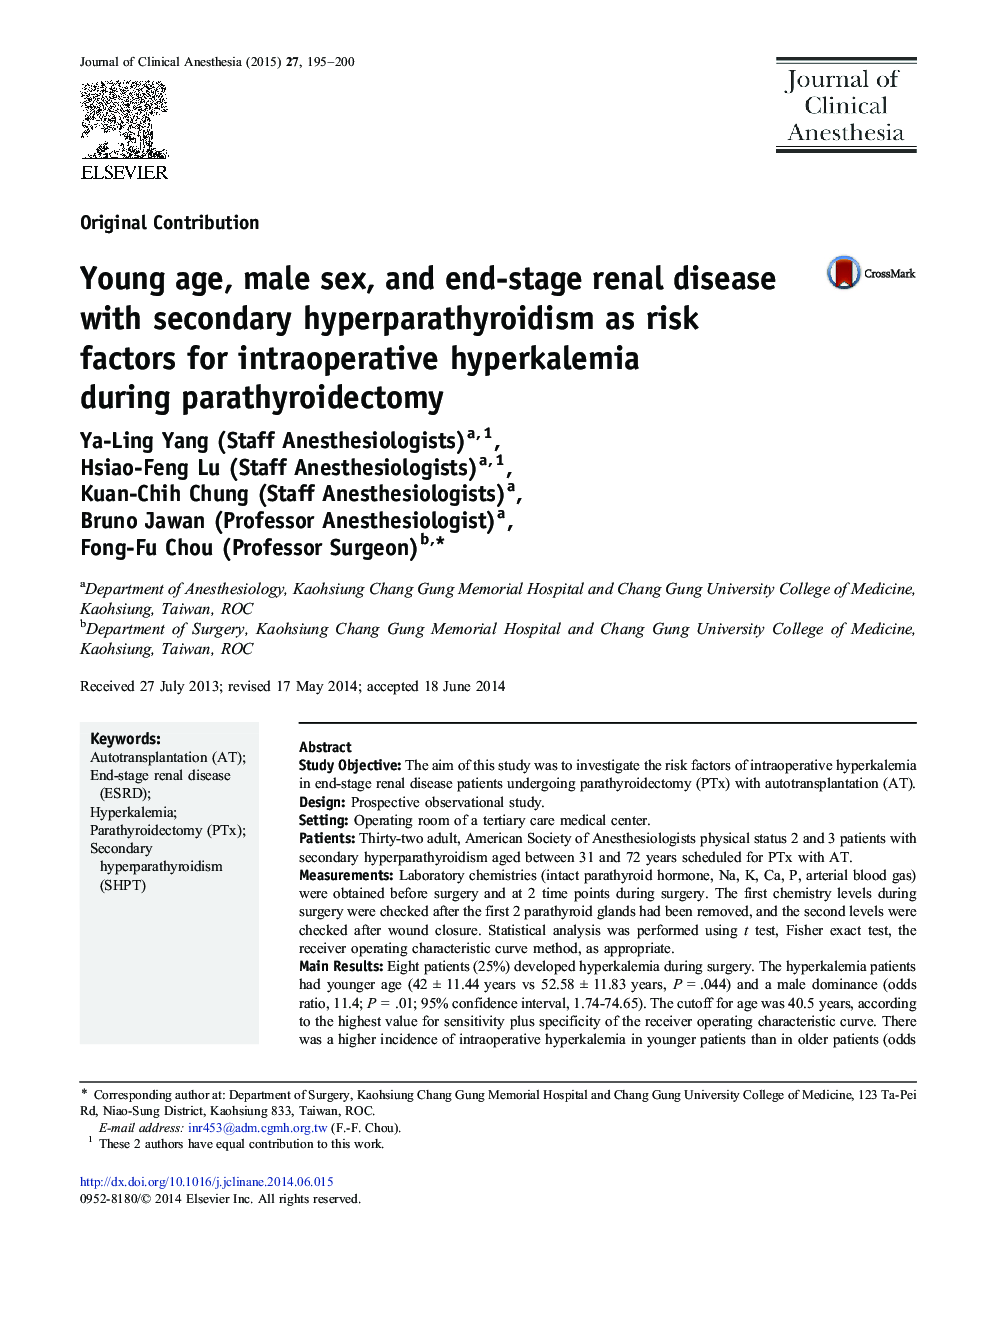 سن جوان، جنس مذکر و بیماری کلیه در مرحله آخر با هیپرپاراتیروئیدیسم ثانویه به عنوان عوامل خطر برای هیپرکالمی در طی عمل جراحی پاراتیروئیدکتومی 